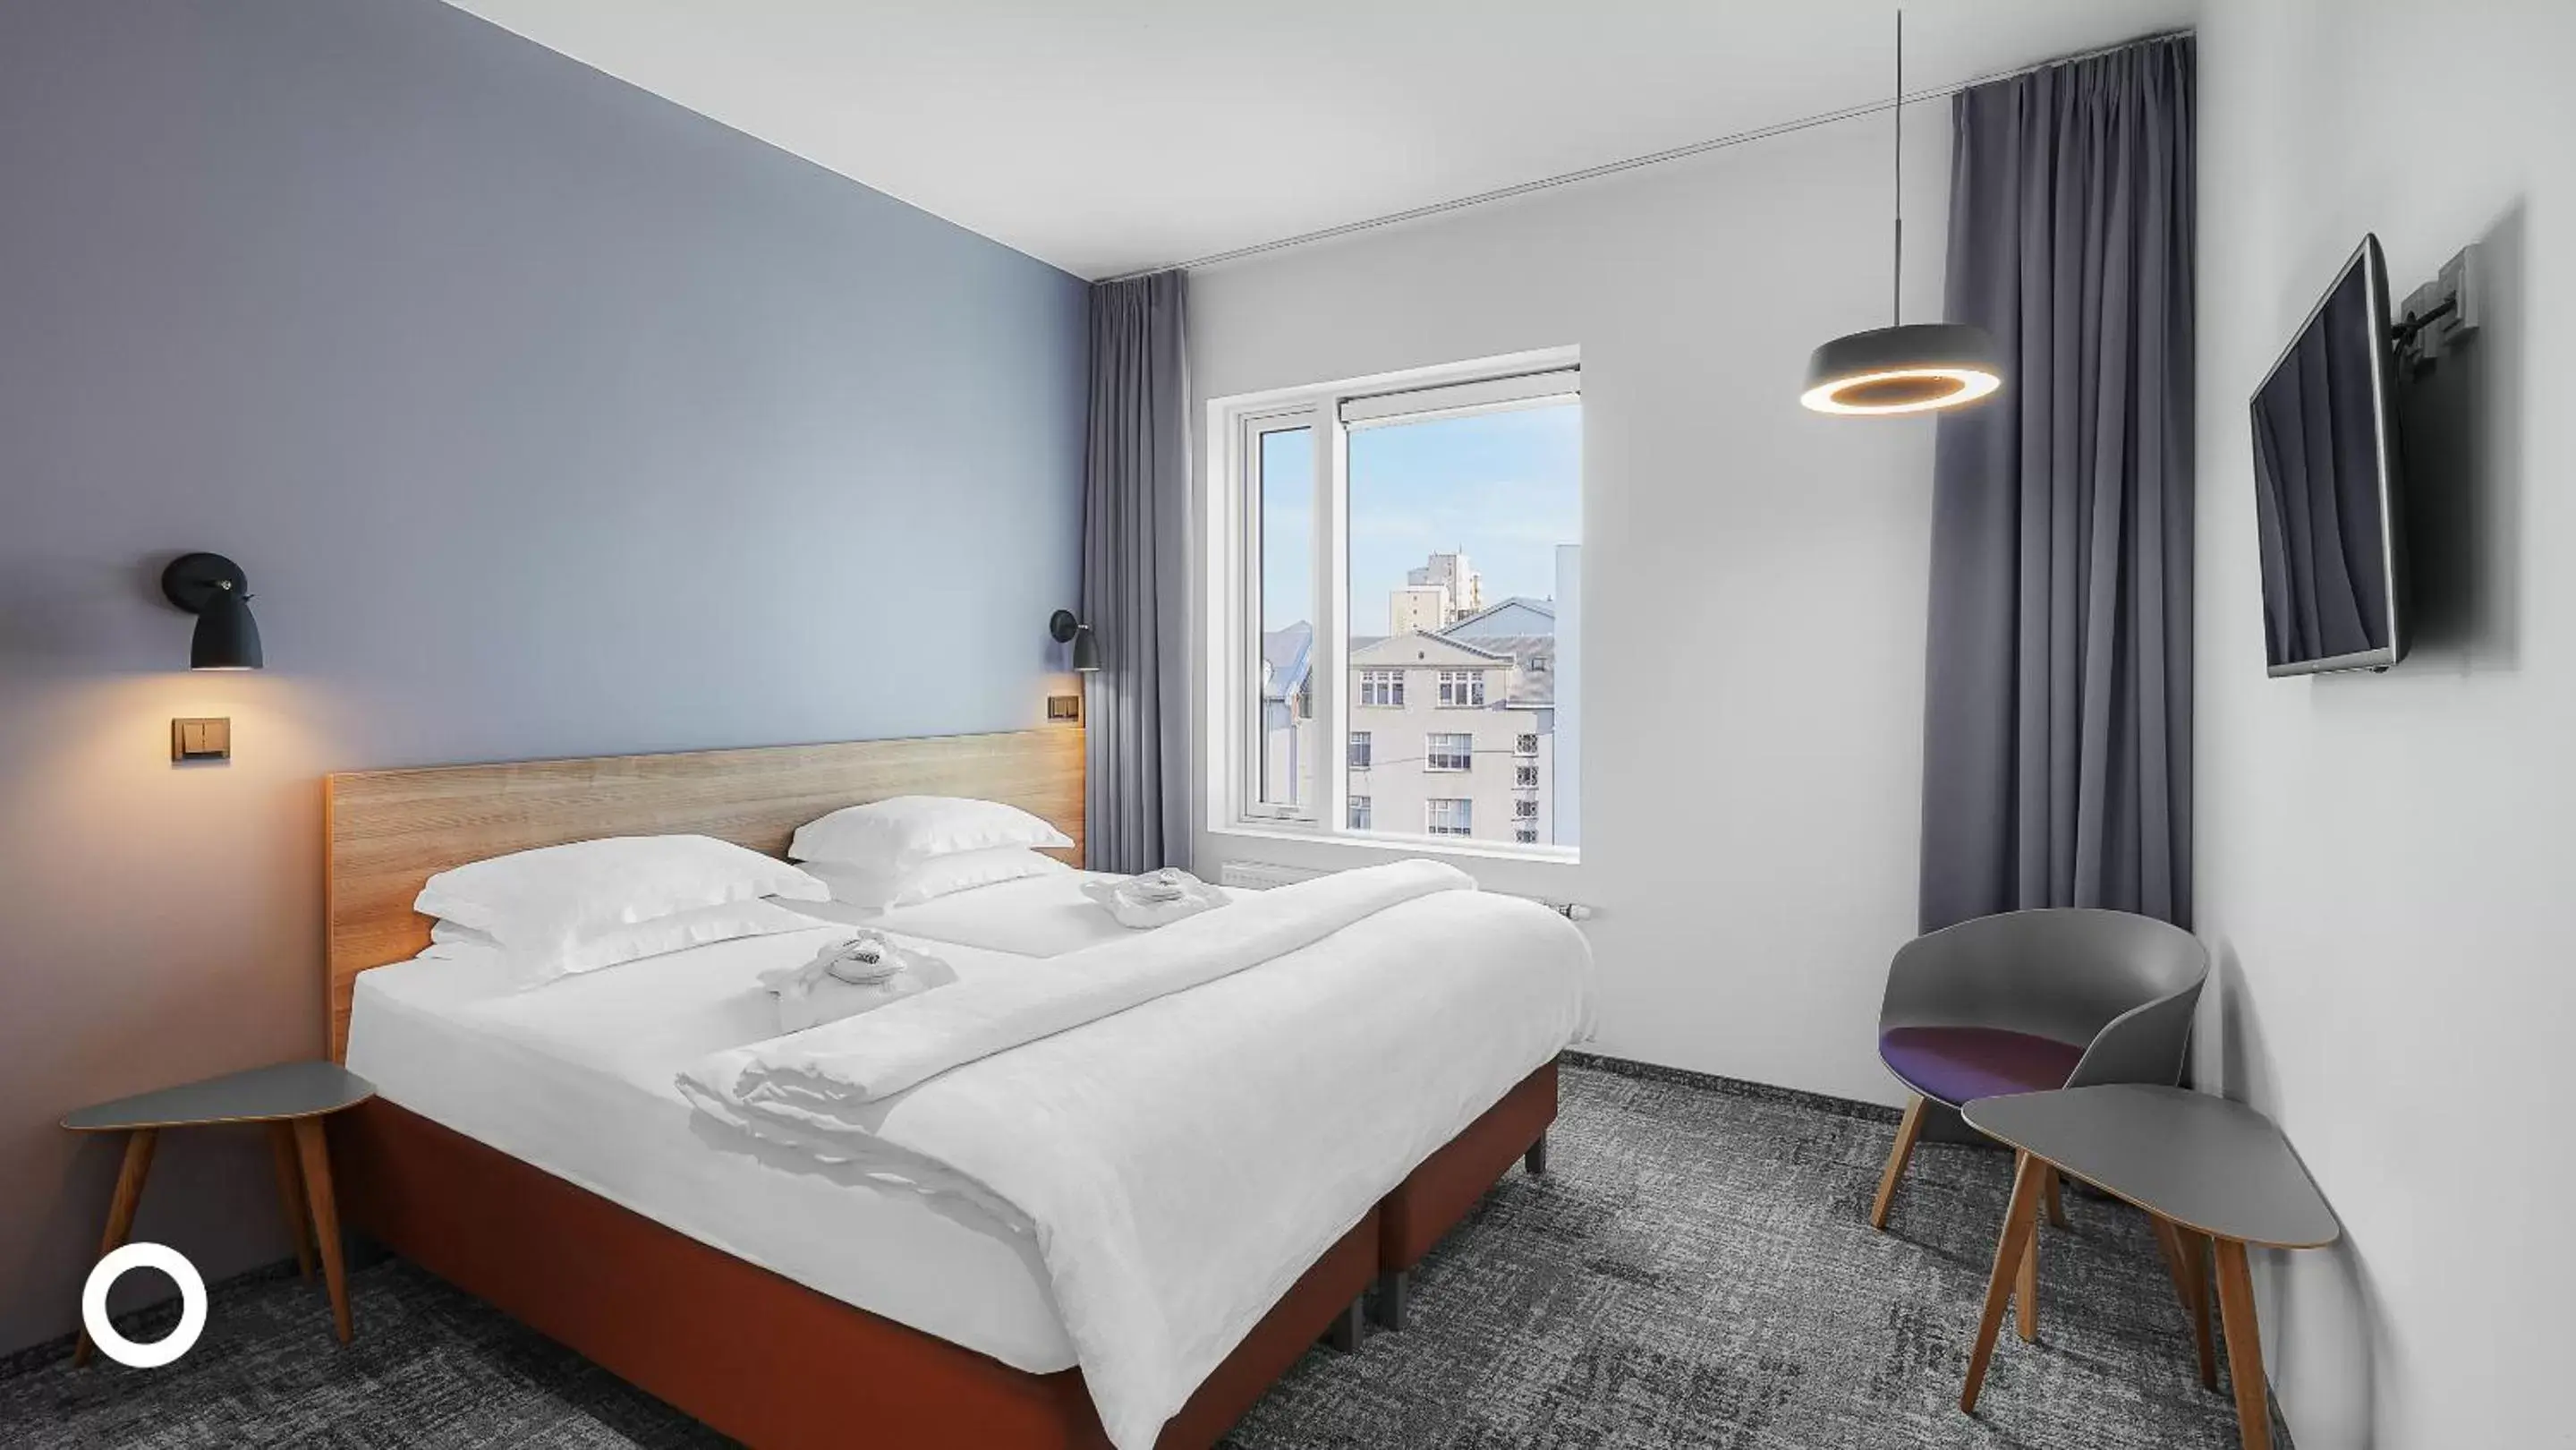 Bedroom, Bed in Midgardur by Center Hotels